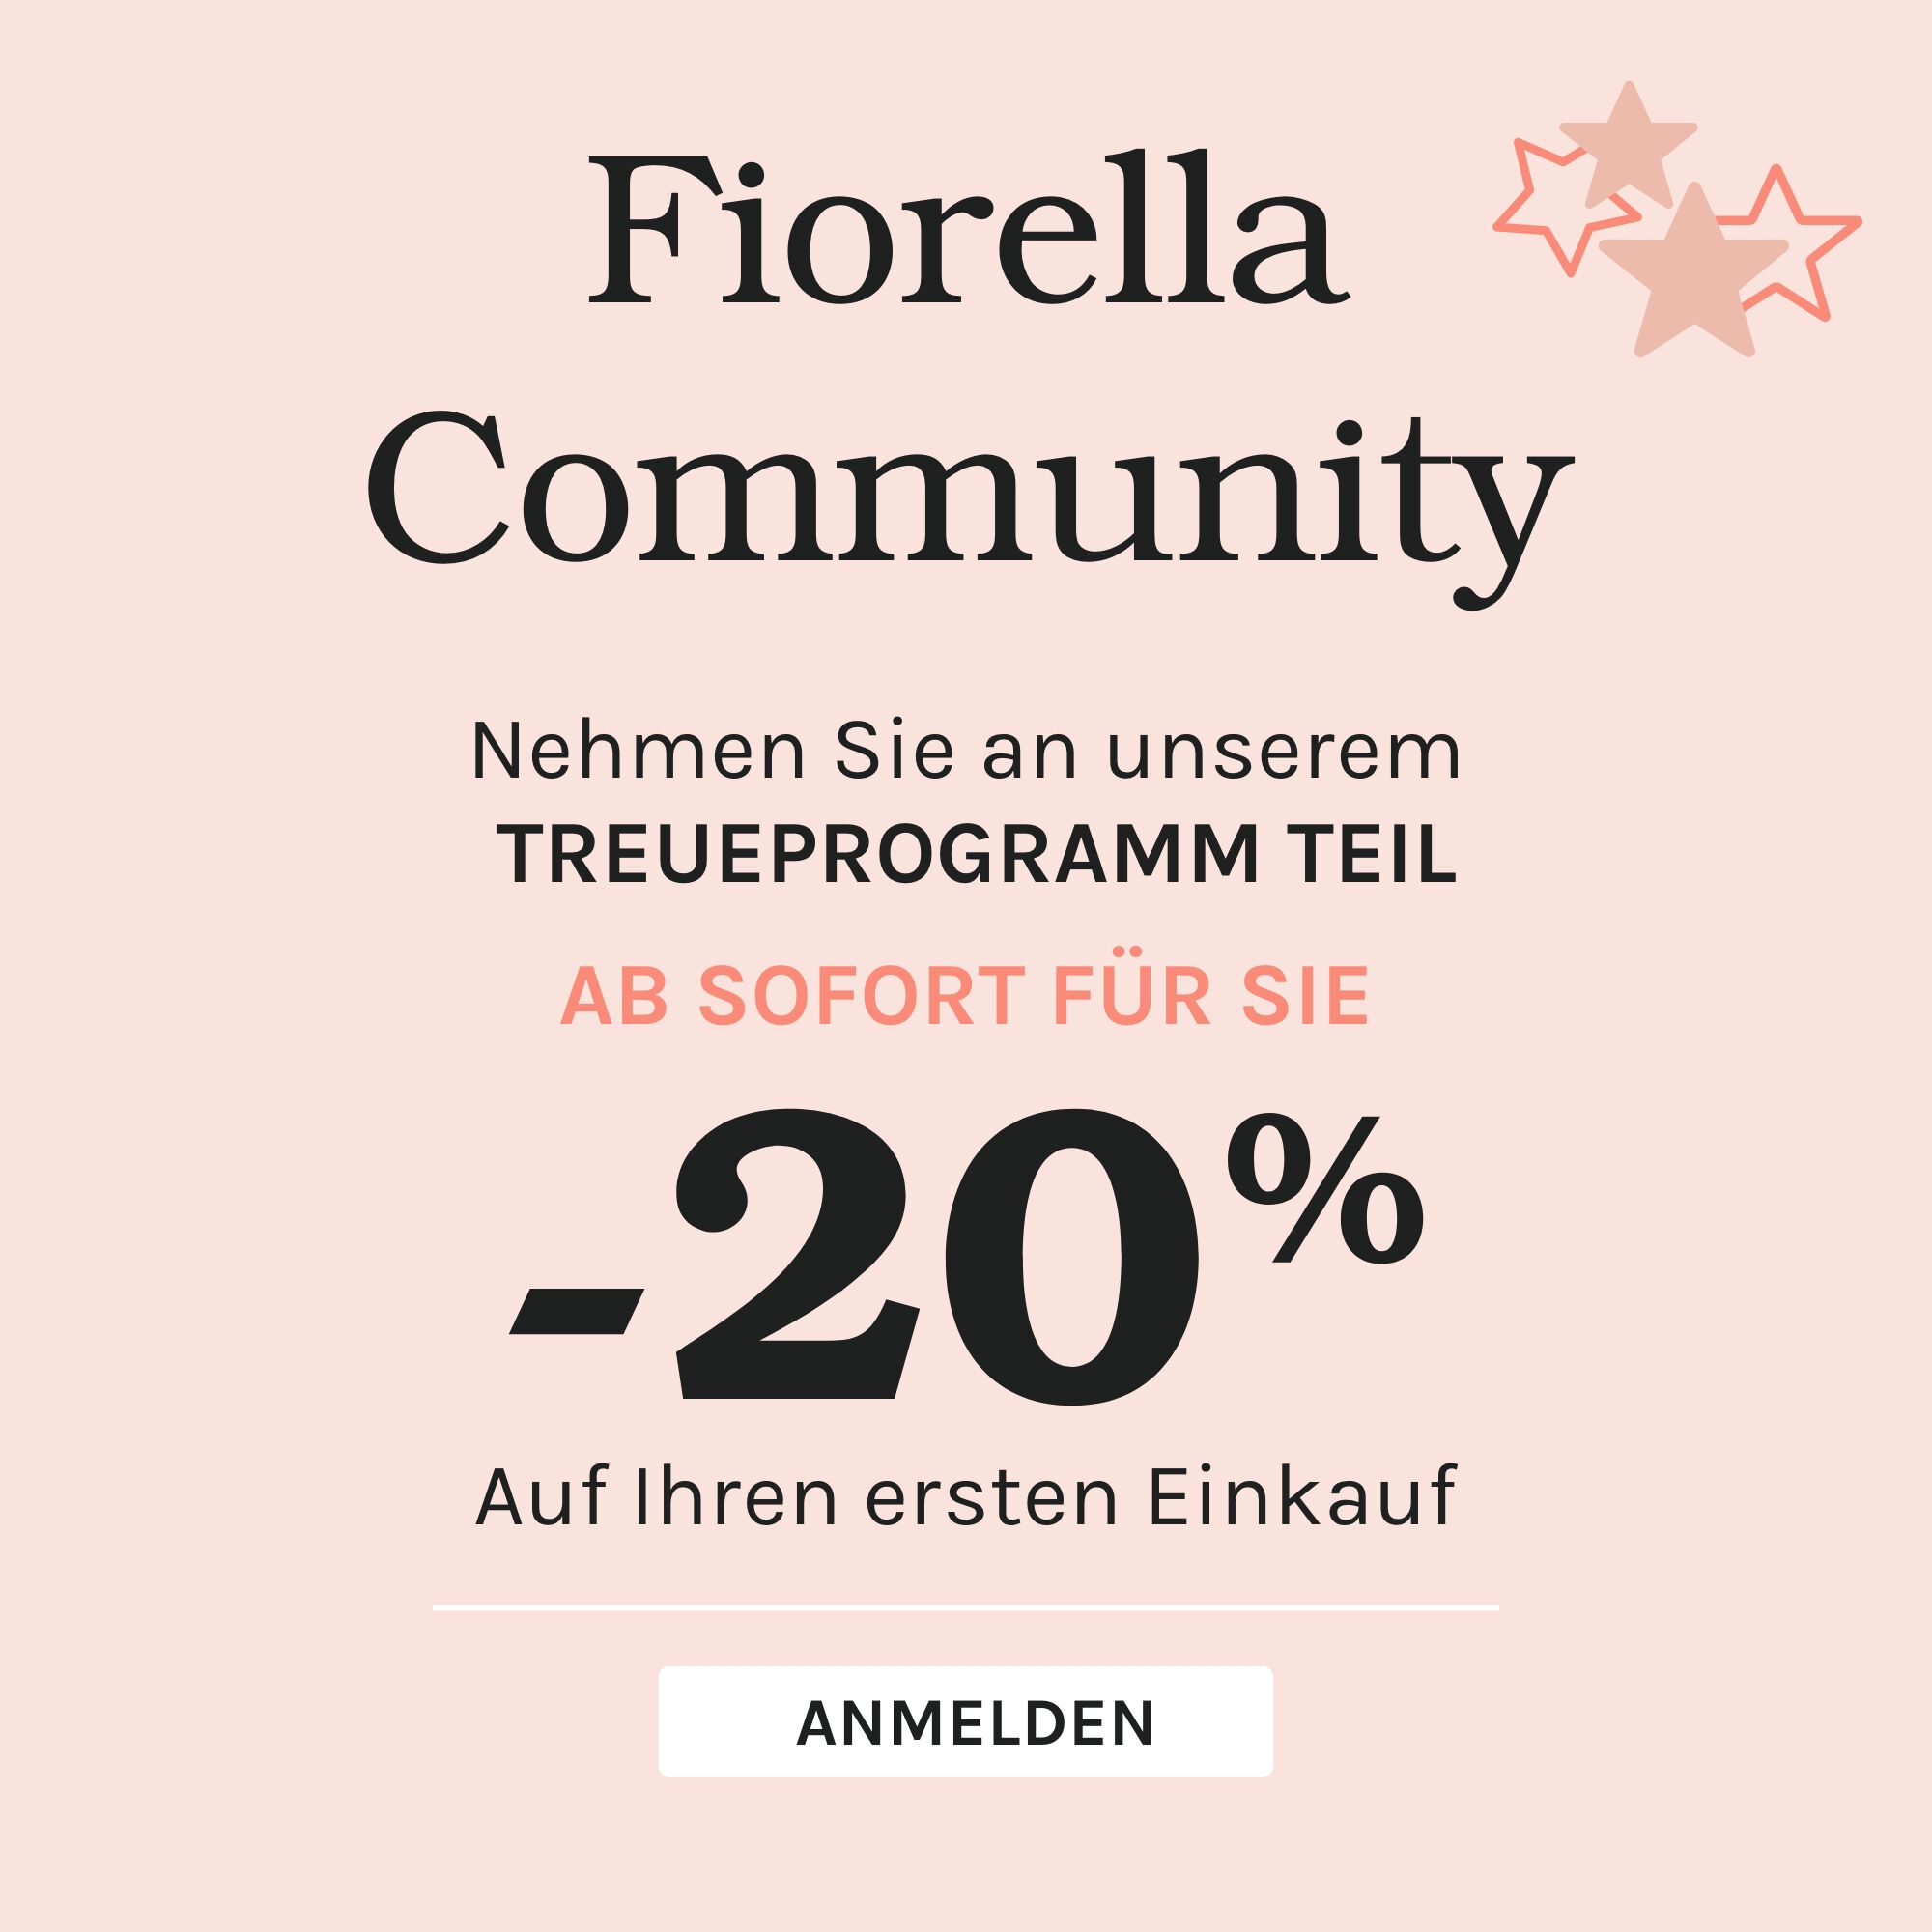 Fiorella Community